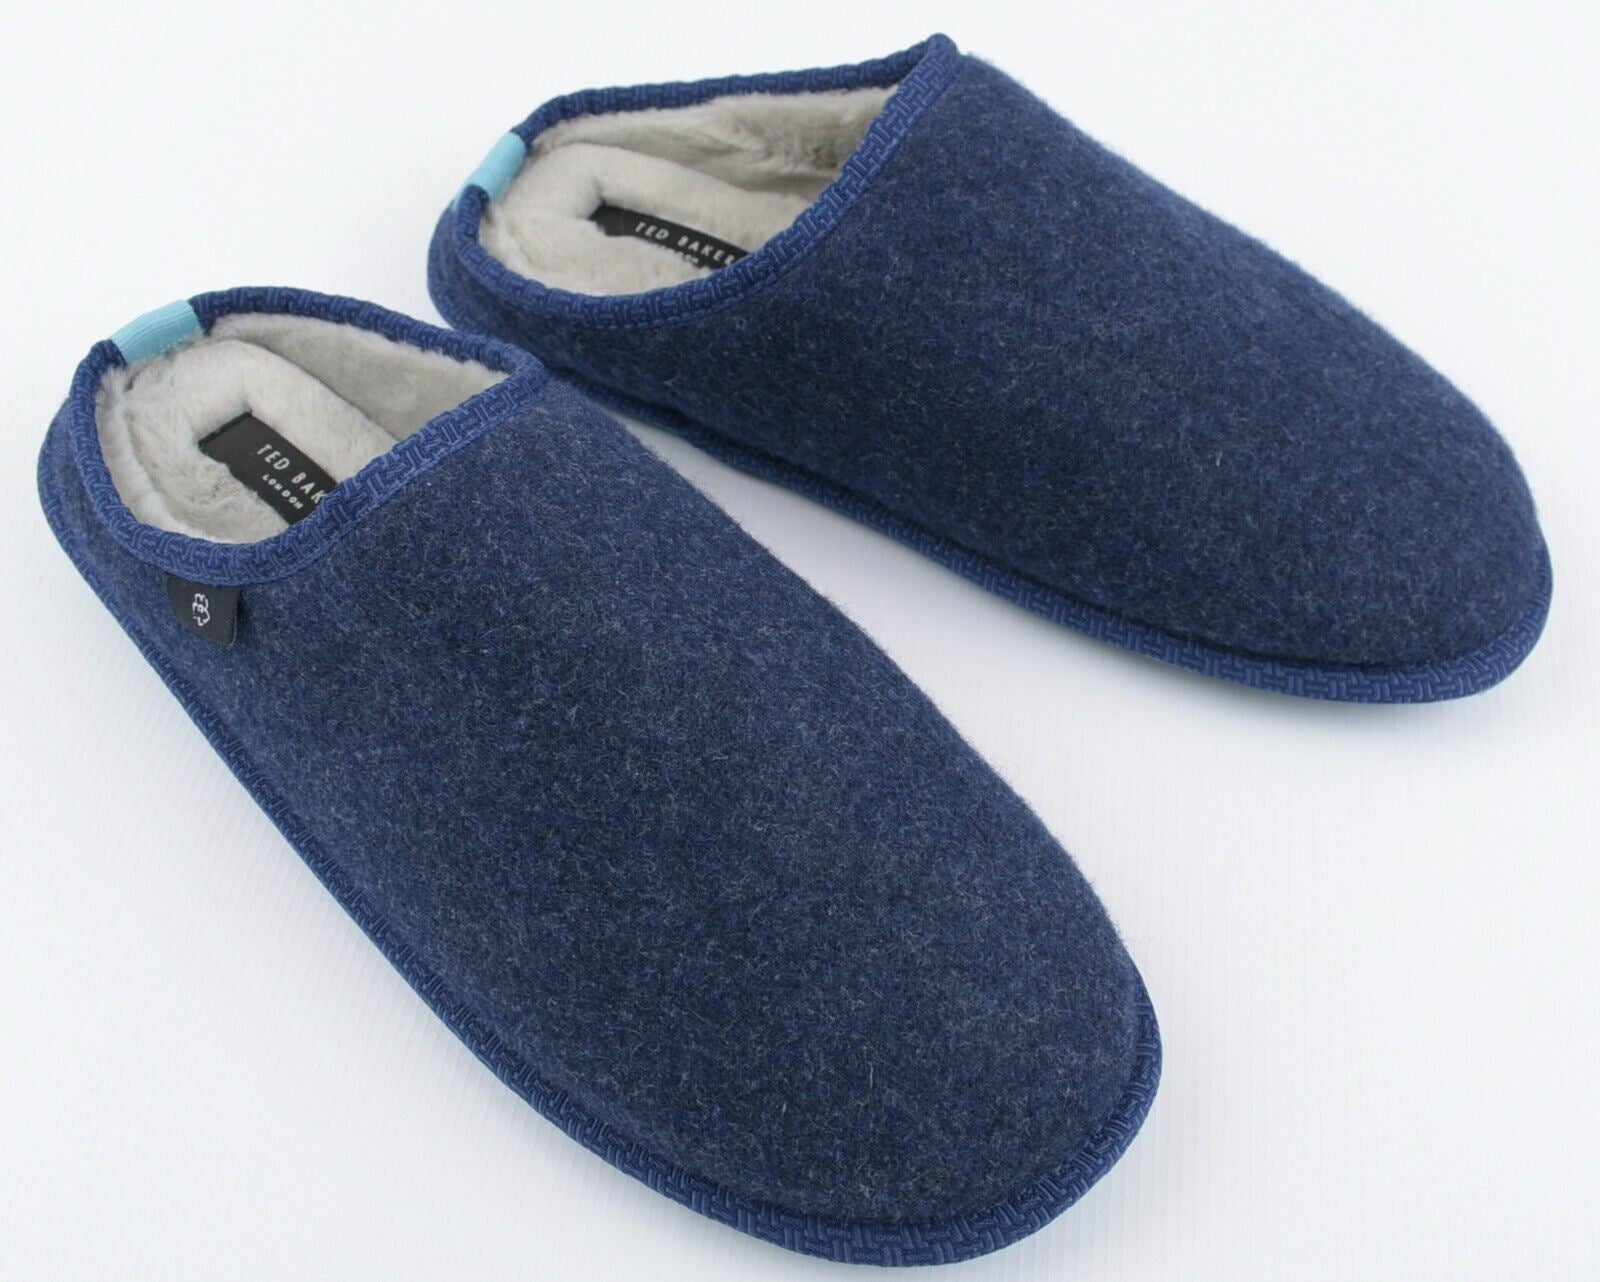 TED BAKER Men's SIMONN Felt Mulet Sole Slippers, Blue, size UK 11 /EU 45